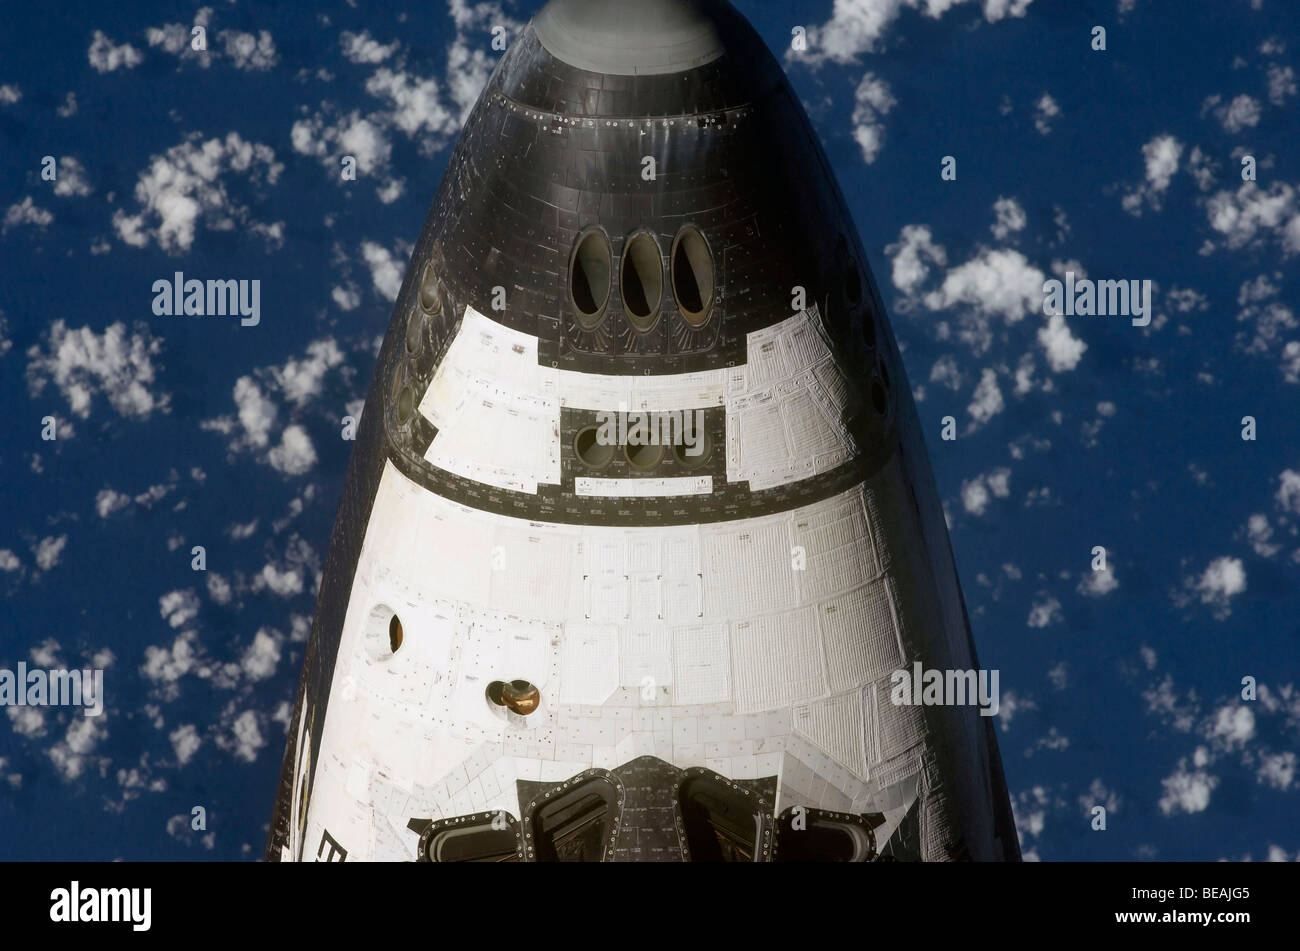 In der Nase von der Space Shuttle Enterprise von oben fotografiert.  Optimierte Version von ein Originalbild der NASA. Kredit NASA. Stockfoto